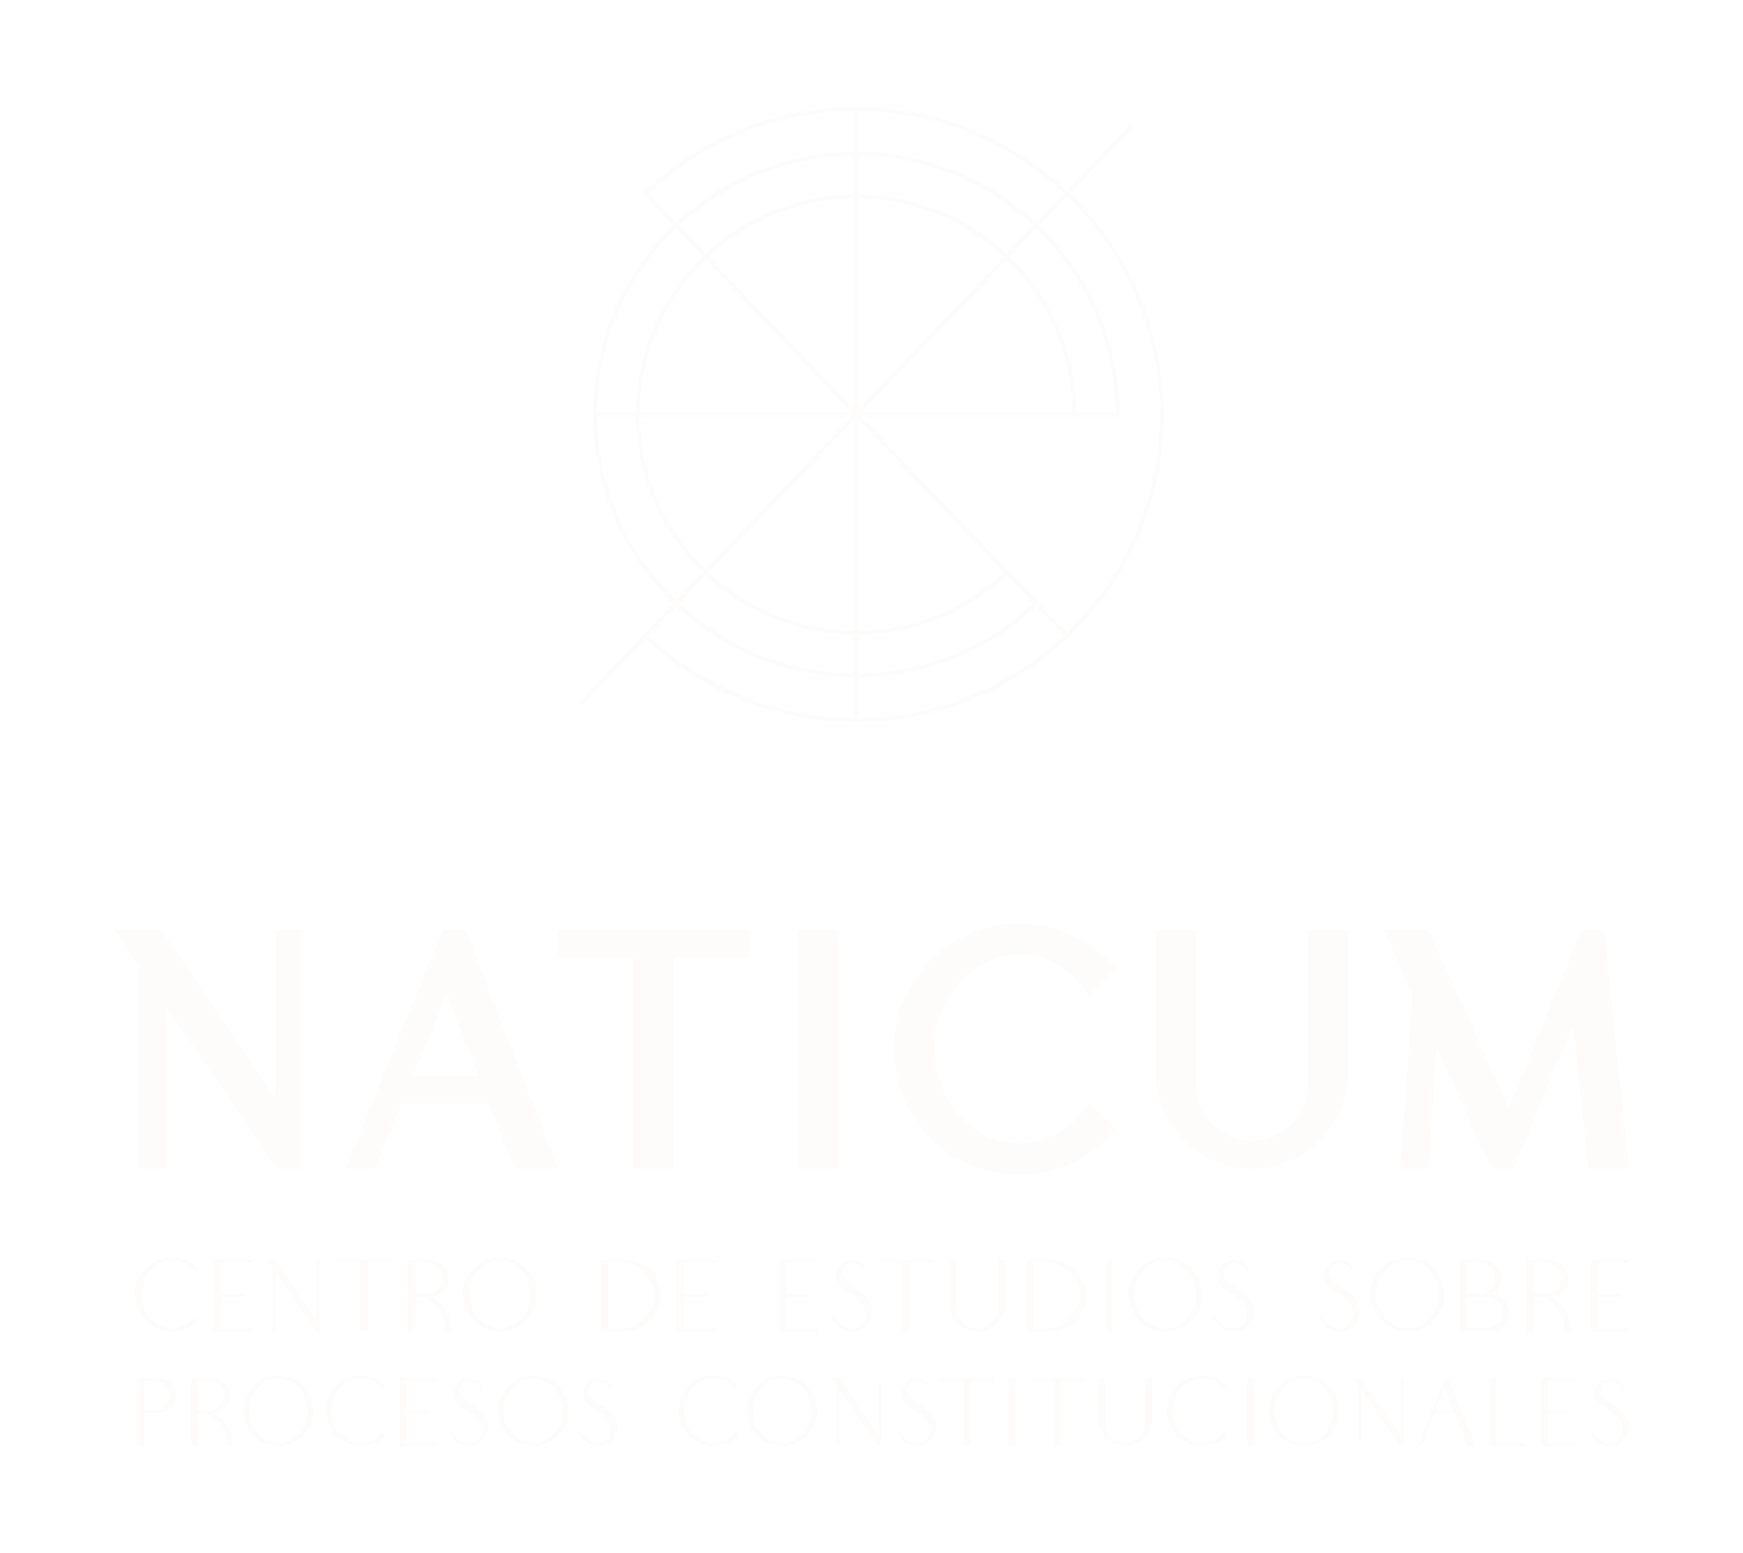 NATICUM_Imagotipo_BLANCO